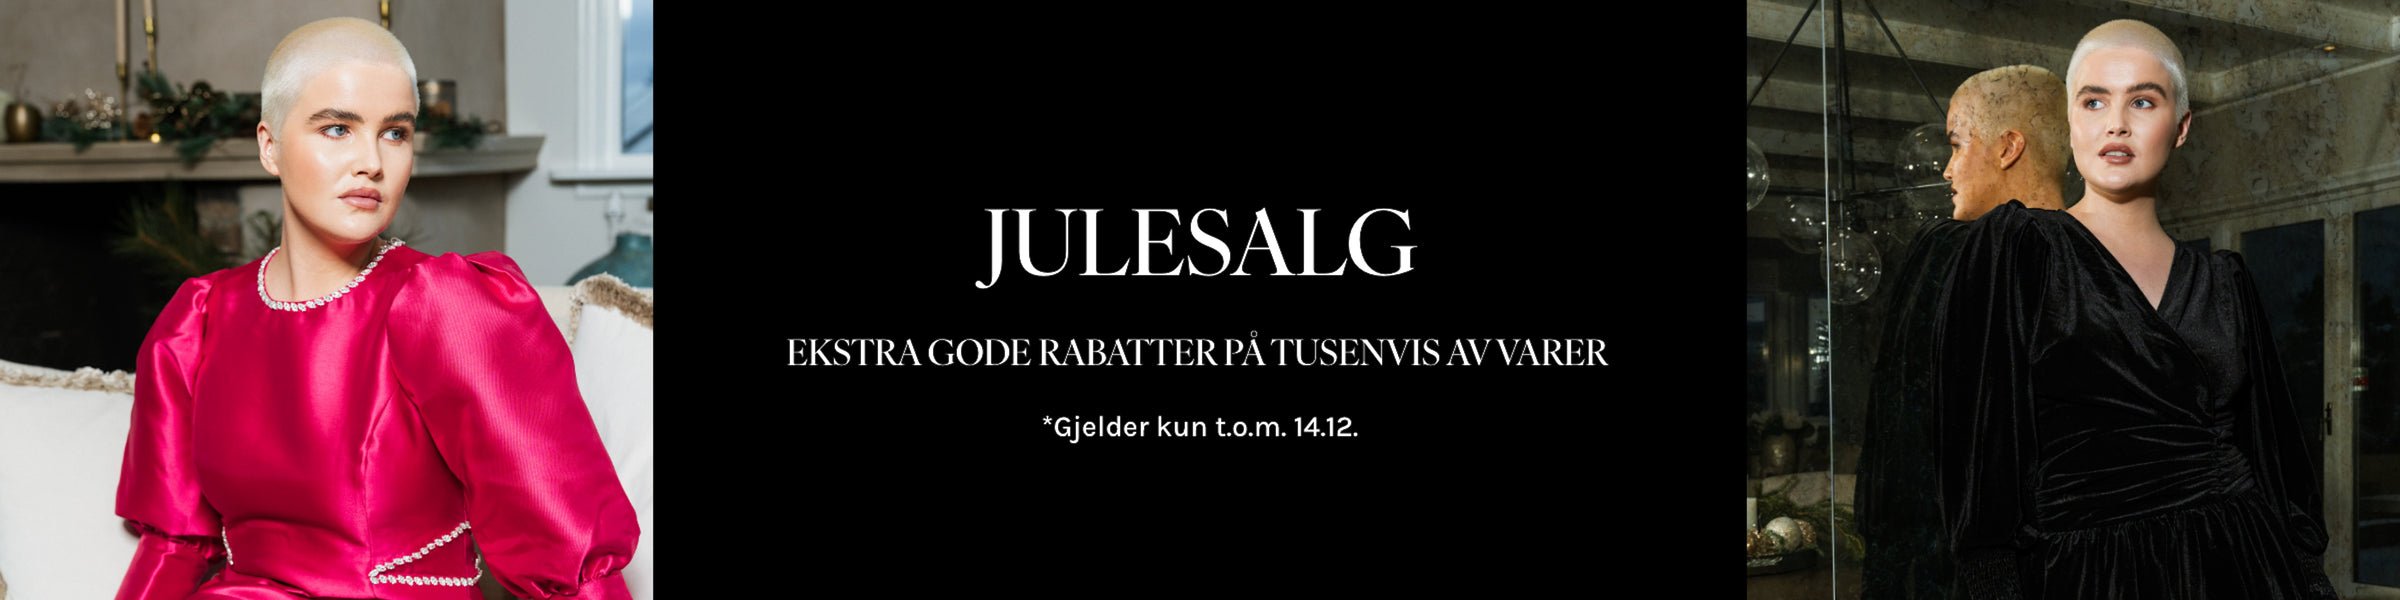 Julesalg